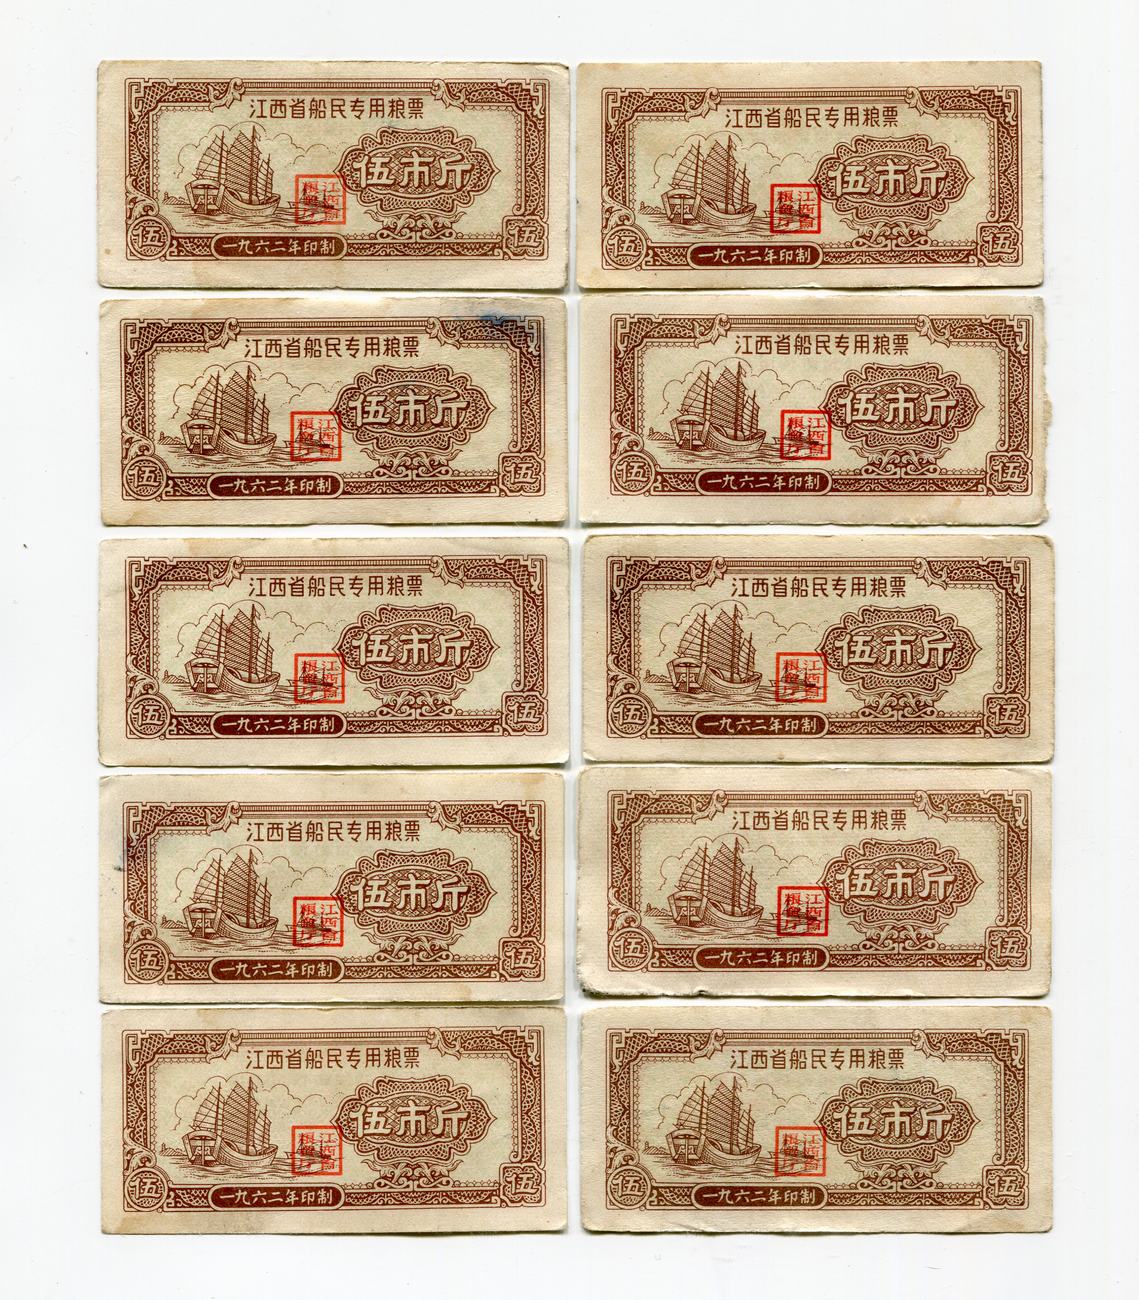 2983江西省2983-1962年船民专用粮票5斤10枚130元.jpg